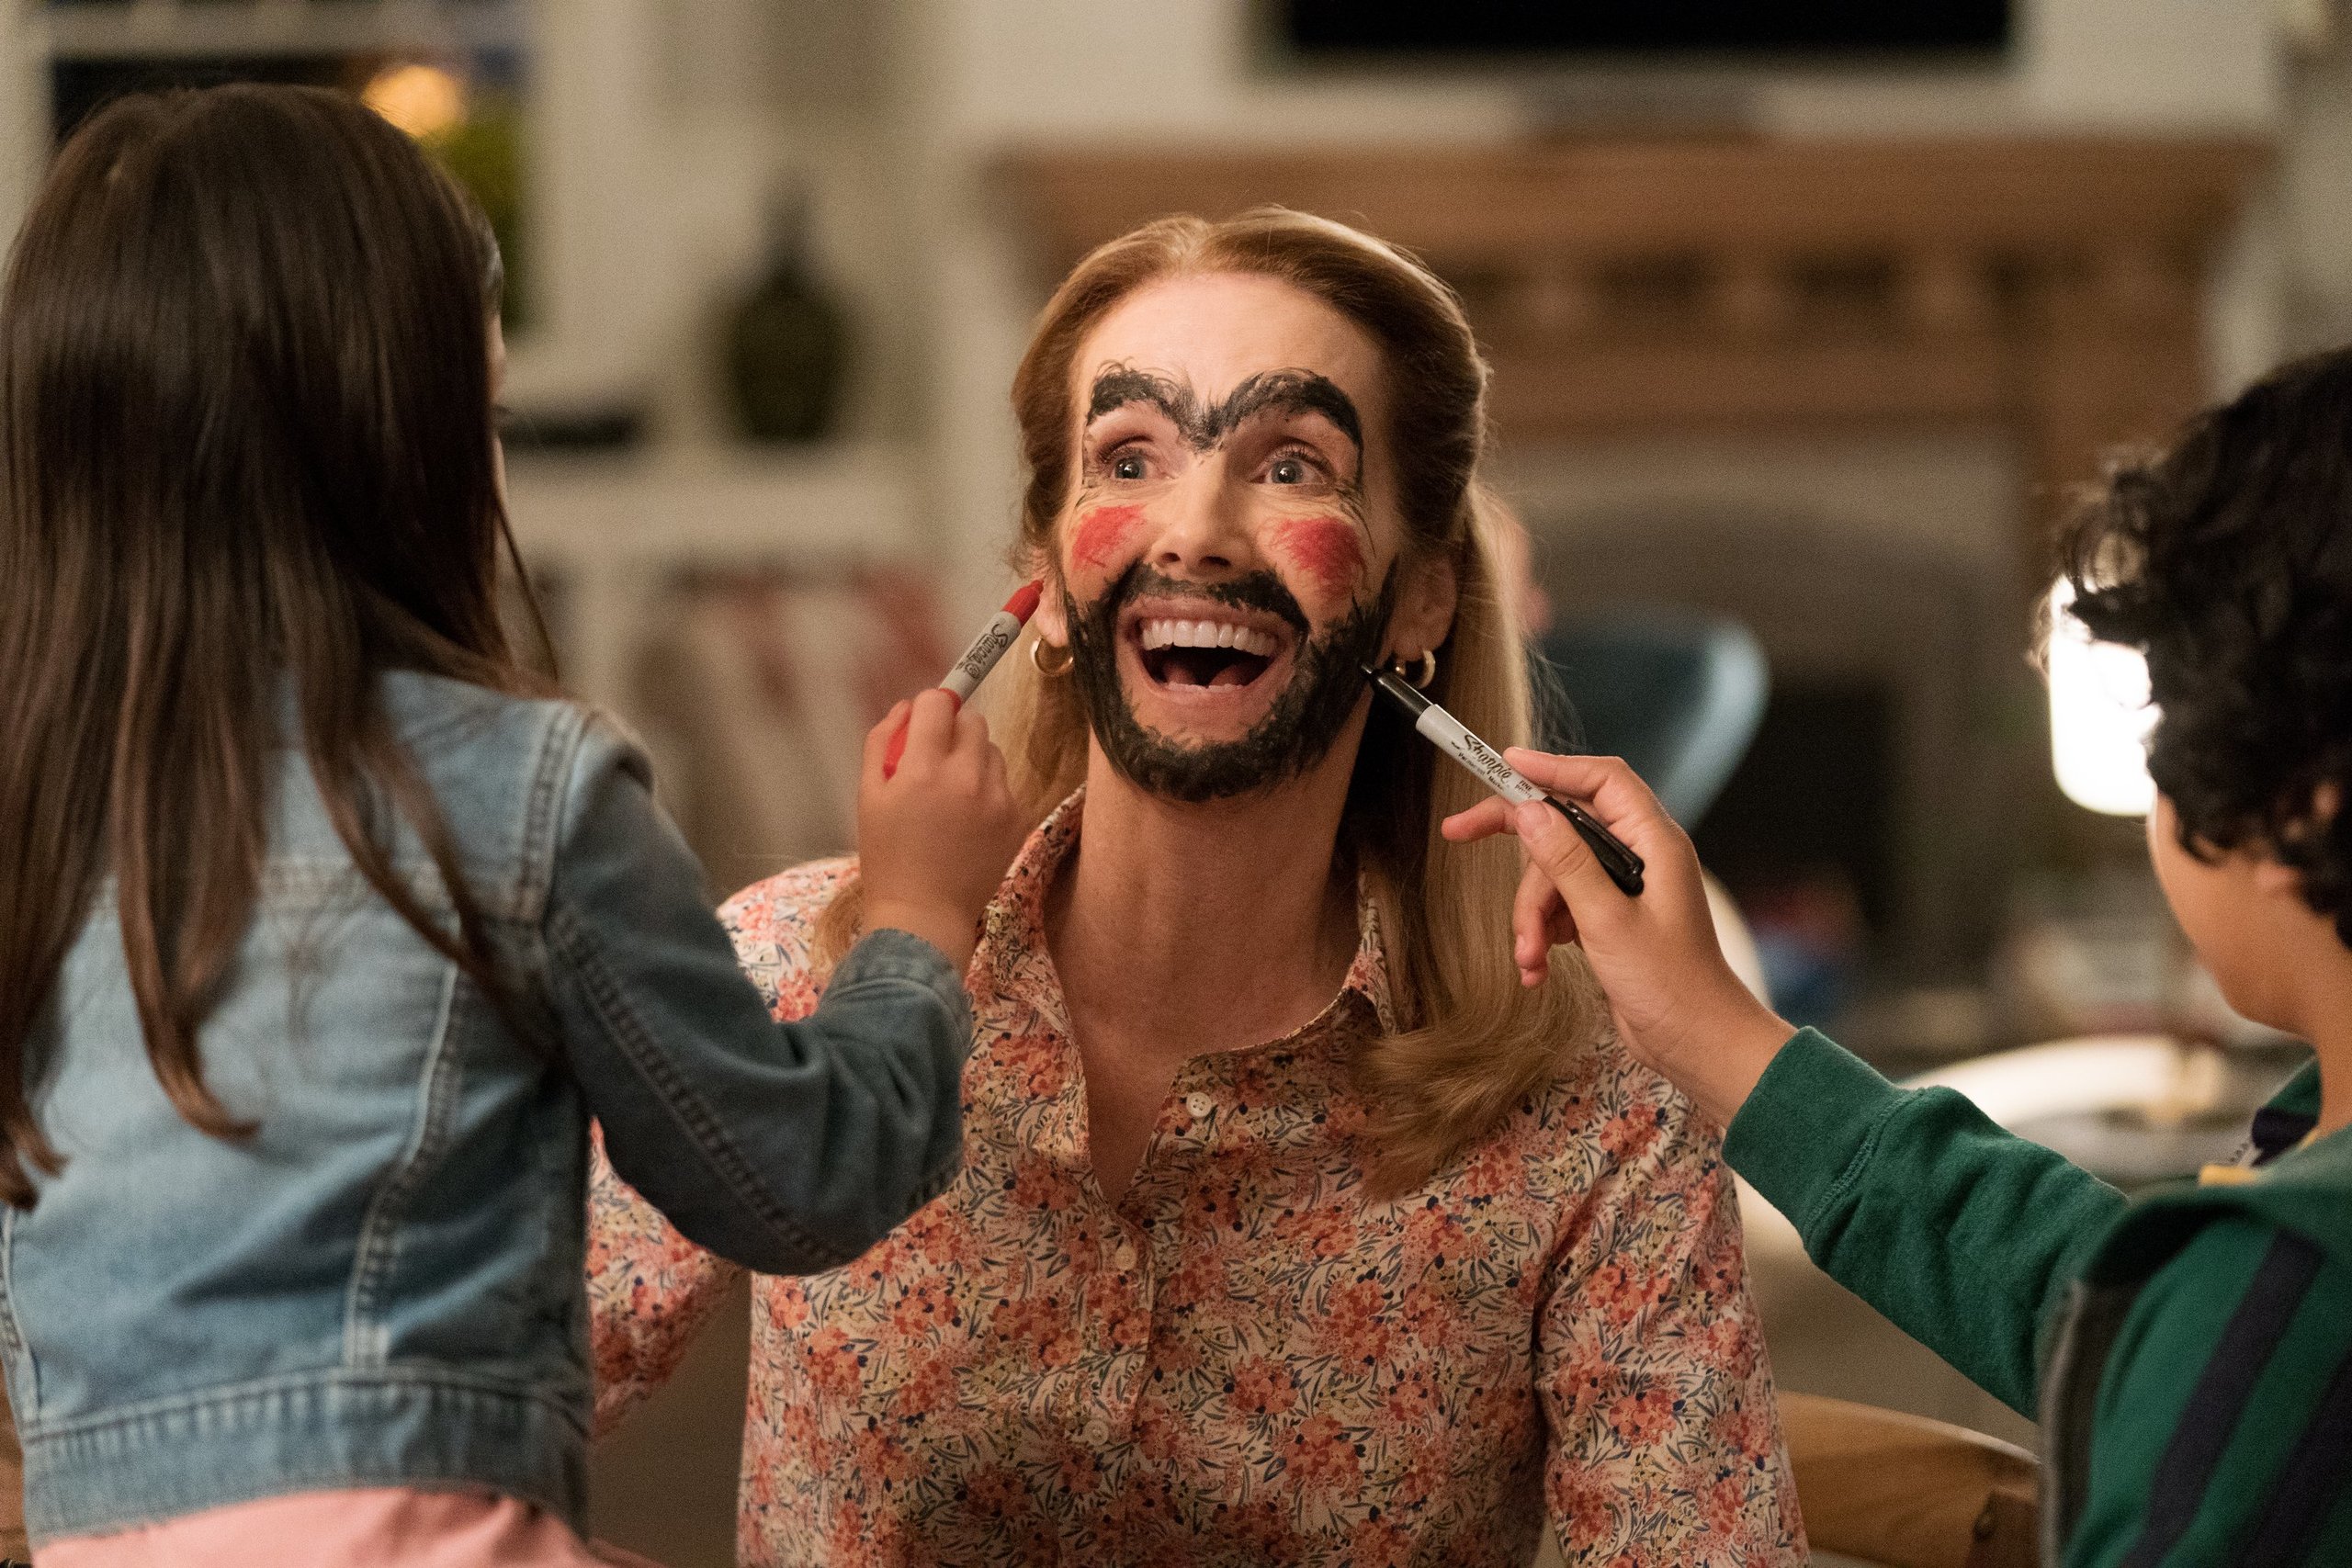 Им обоим весело и легко. «Семья по-быстрому», США, 2019. Семейные комедии. Комедии для всей семьи.